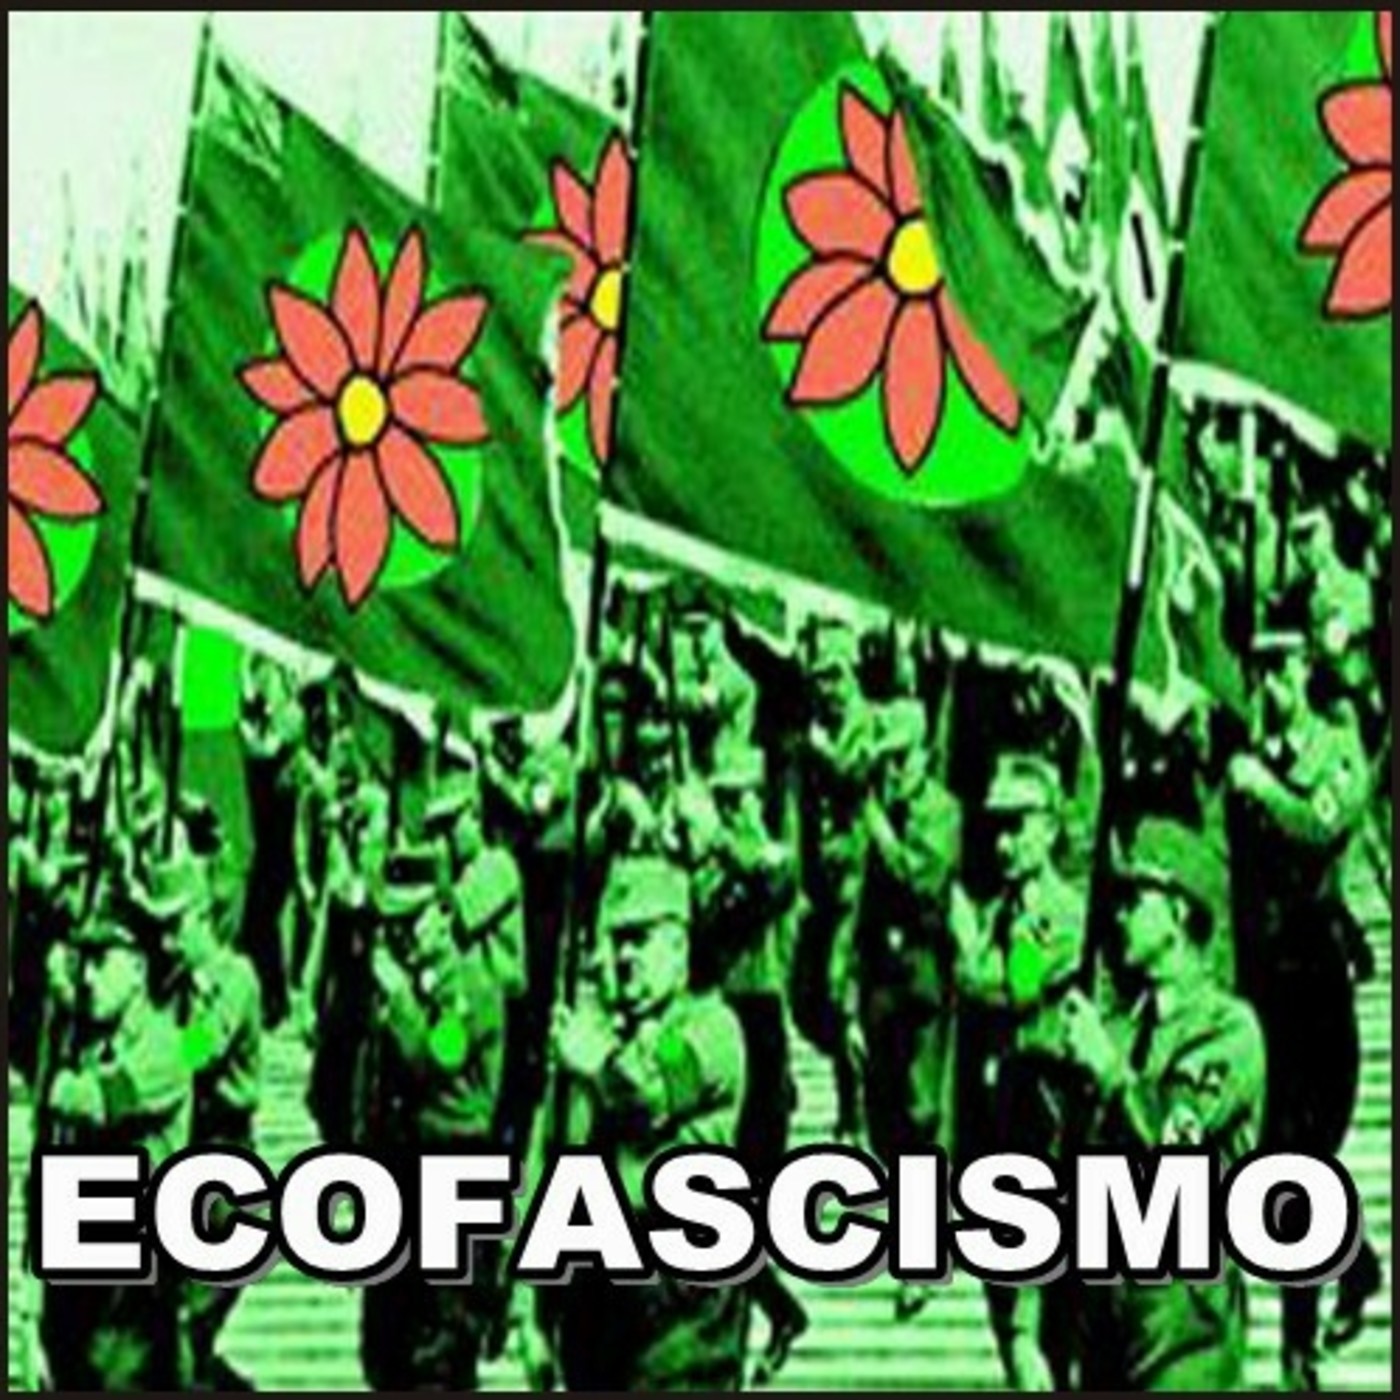 ⚠️(Agenda Global) Ecofascismo - Janet Biehl y Peter Staudenmaier (1995) Cibertecnocrática 2030 - Audioespai - Podcast en iVoox